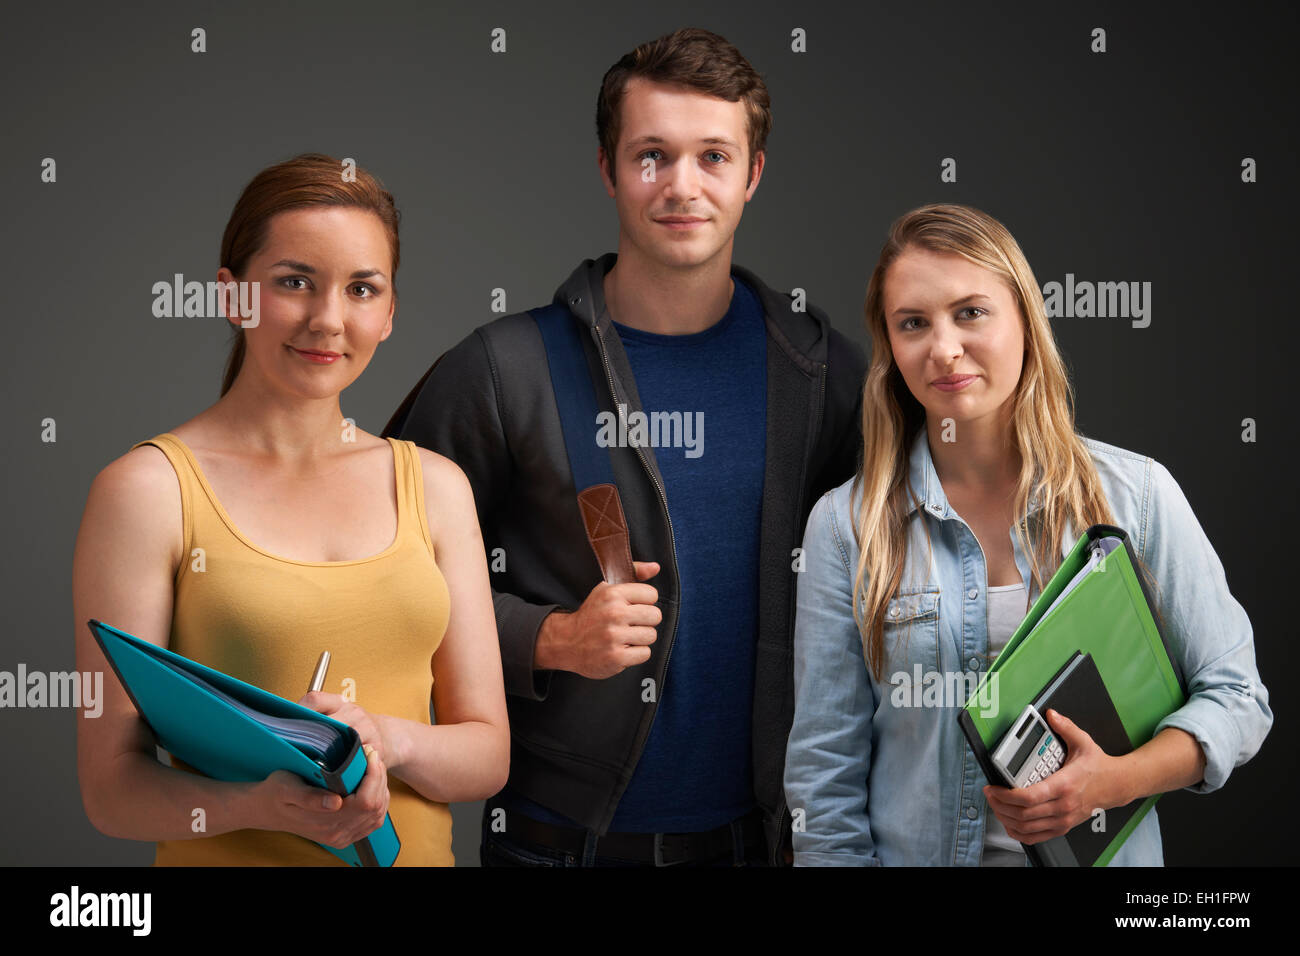 Ritratto in studio di tre studenti universitari Foto Stock